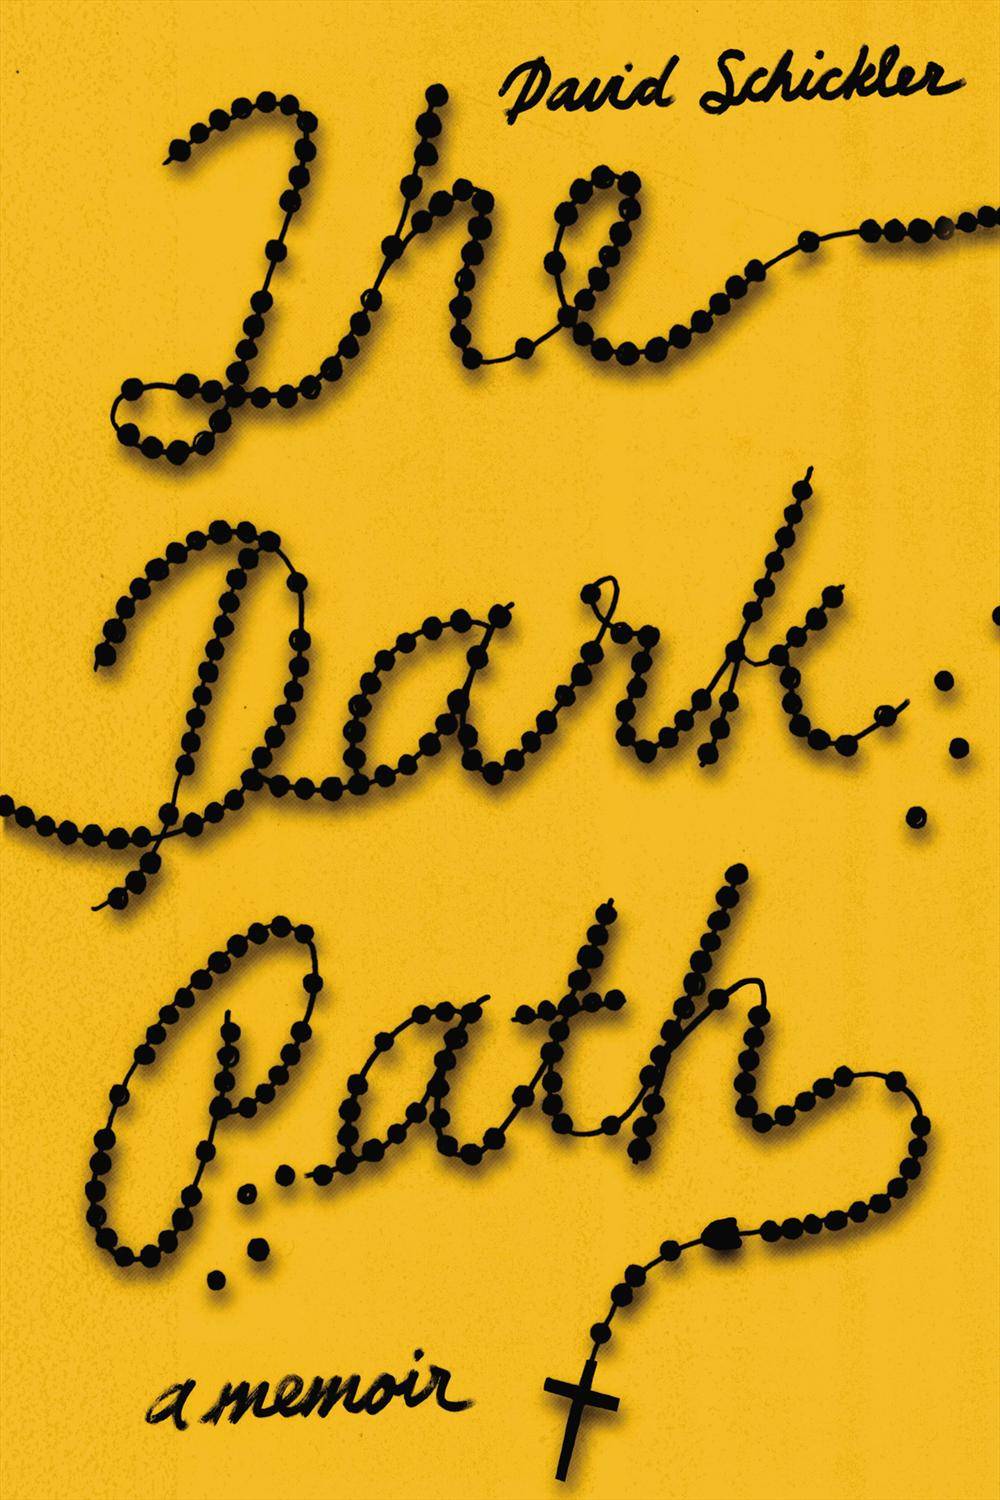 The Darkest Path by Jeff Hirsch